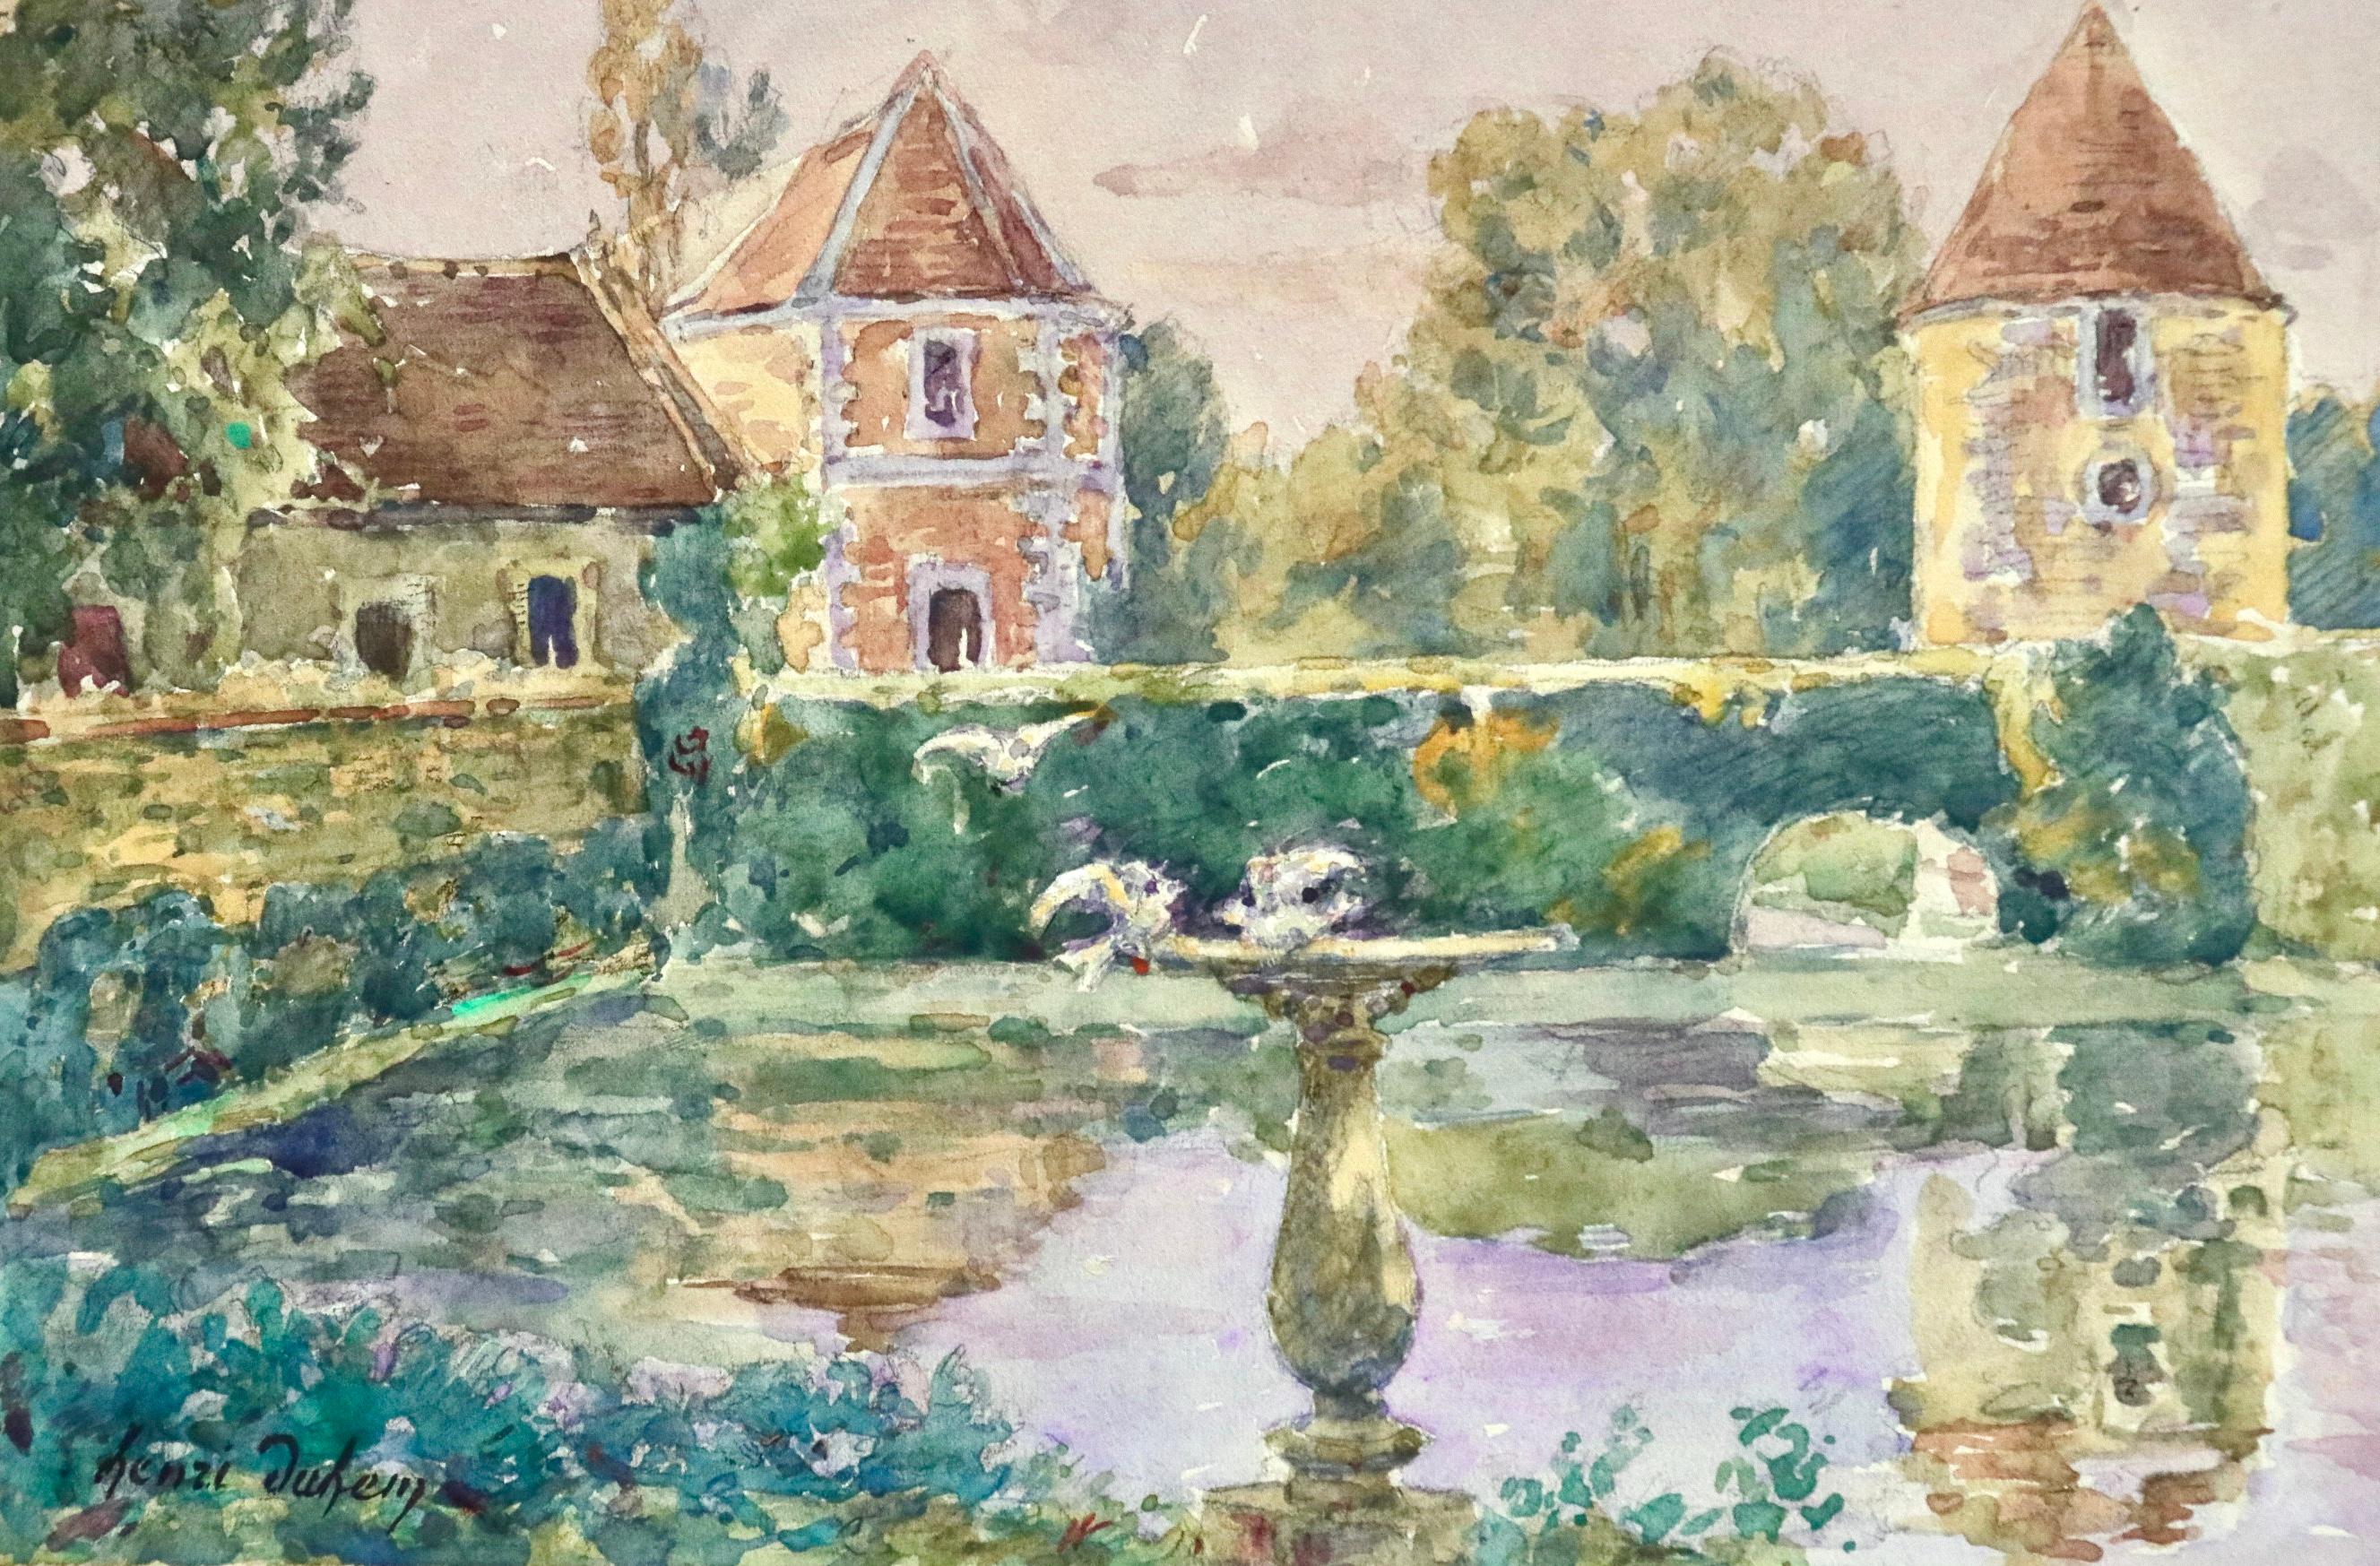 Le Jardin de l'oncle Dincq - Douai - 19th Century Watercolor, Landscape - Duhem - Beige Landscape Art by Henri Duhem